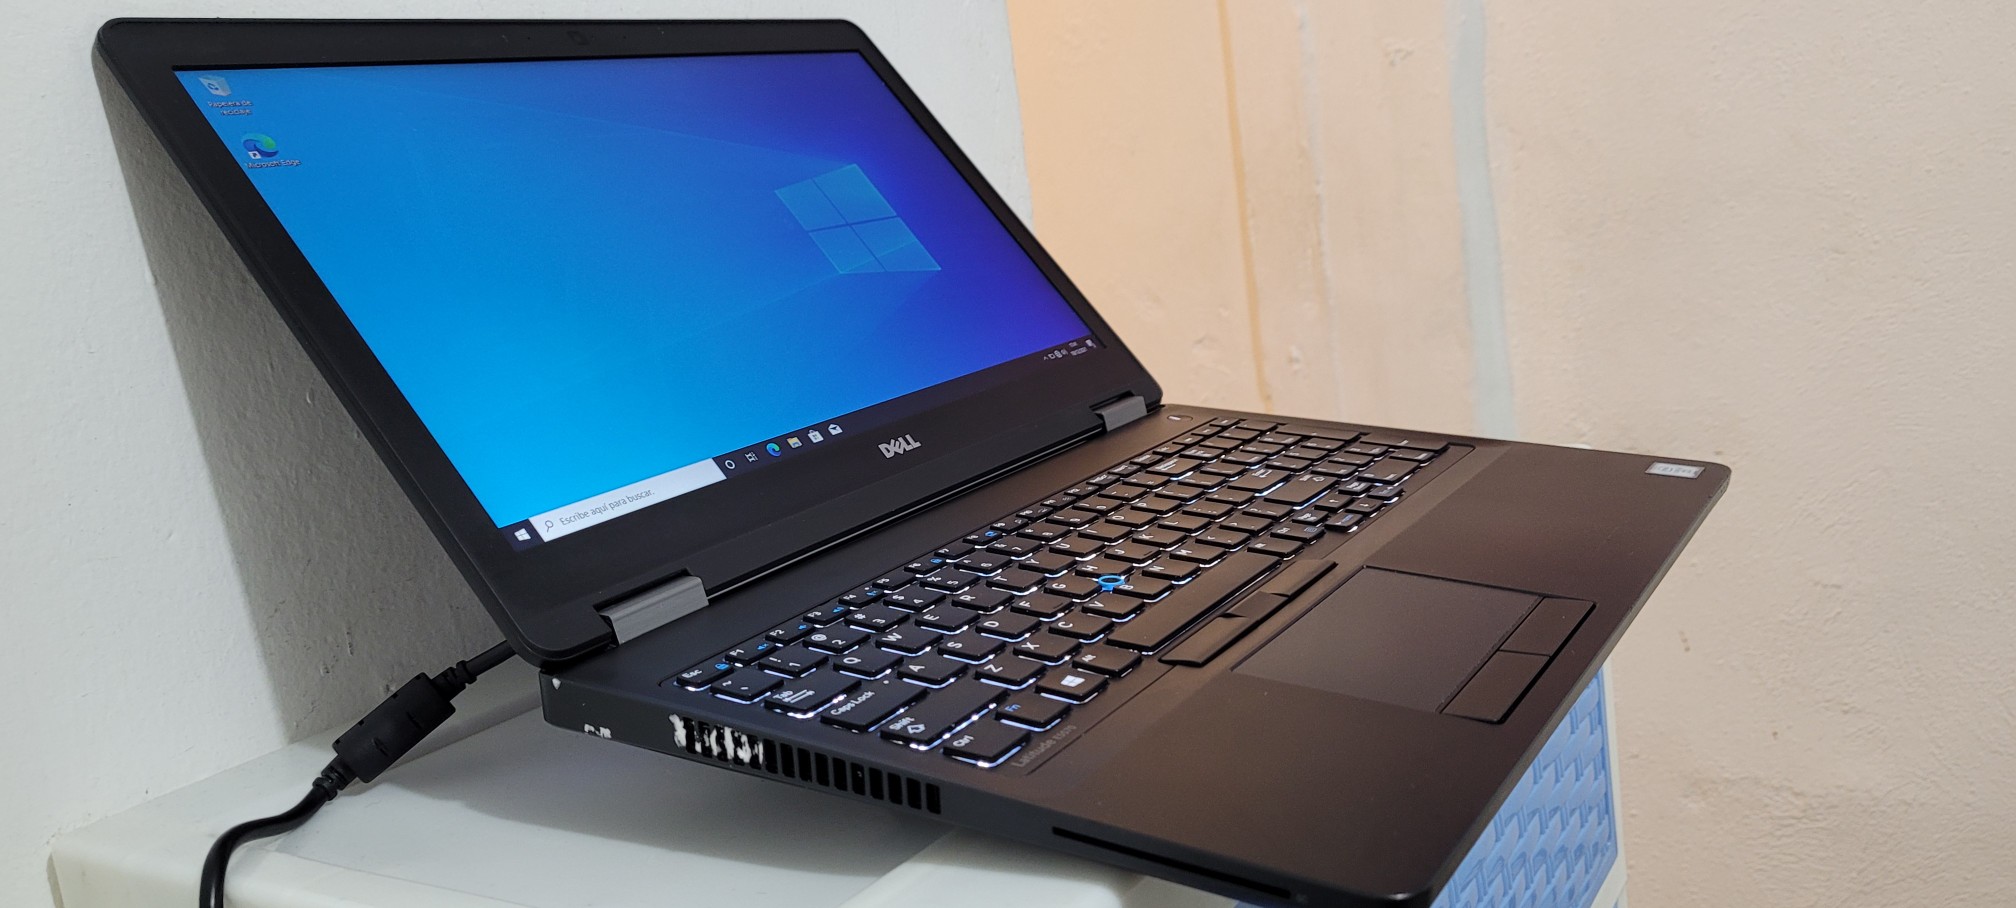 computadoras y laptops - Nueva Dell 5570 17 Pulg Core i7 6ta Gen Ram 16gb Disco 512gb SSD Video 8gb 1